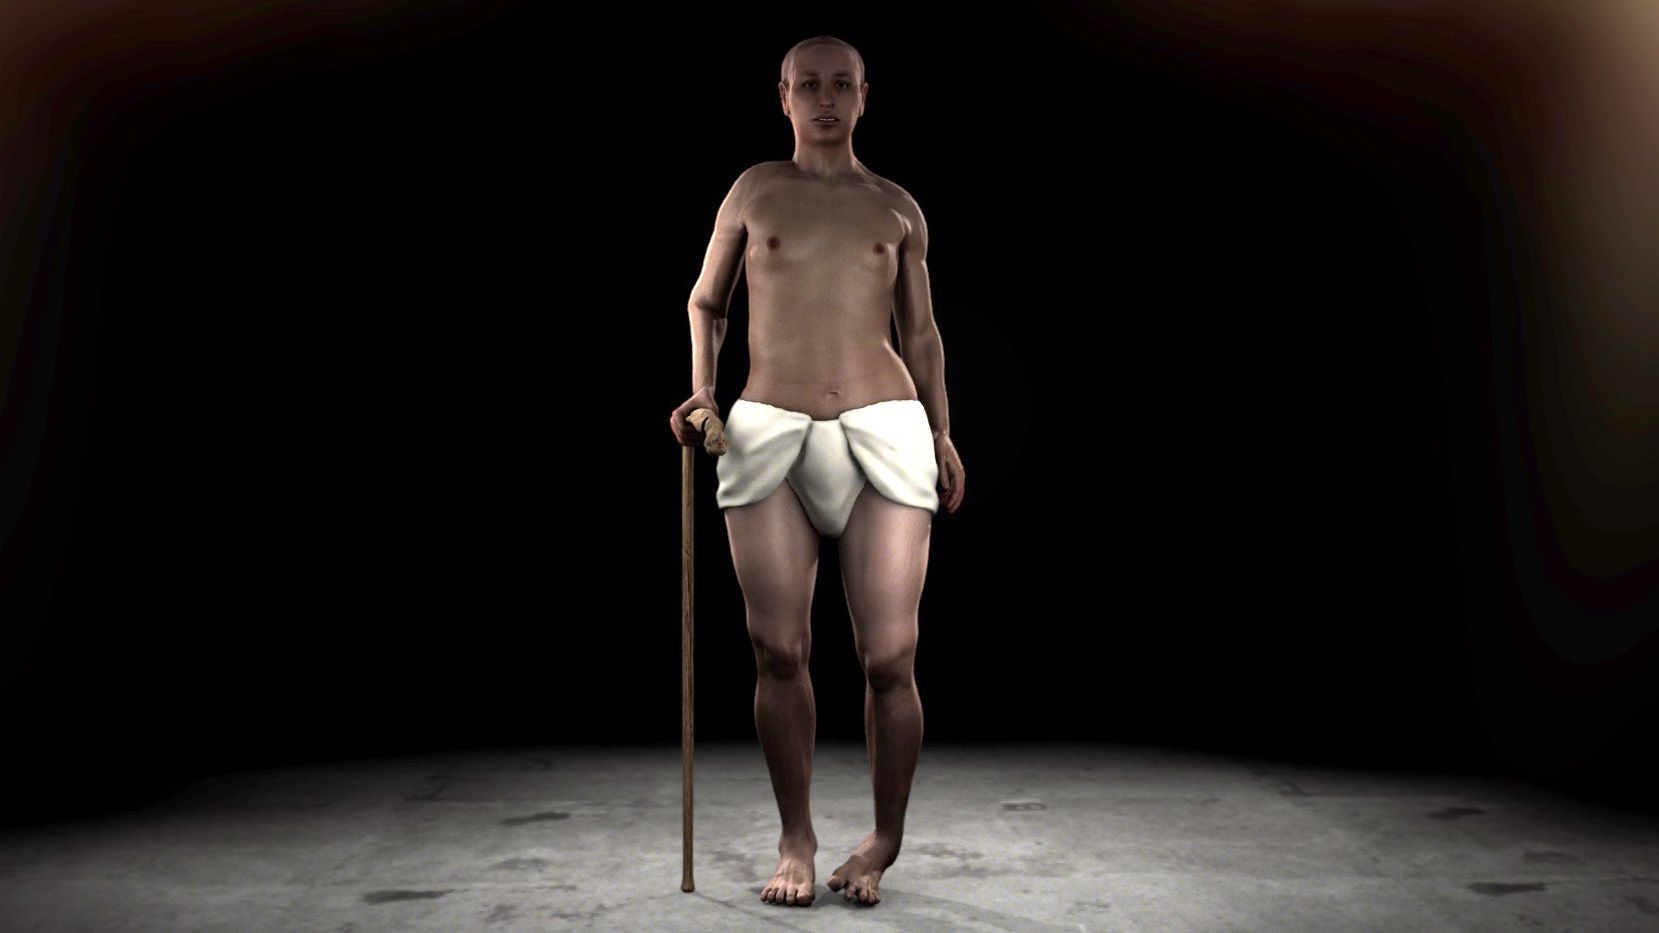 King tuts virtual autopsy reveals surprises